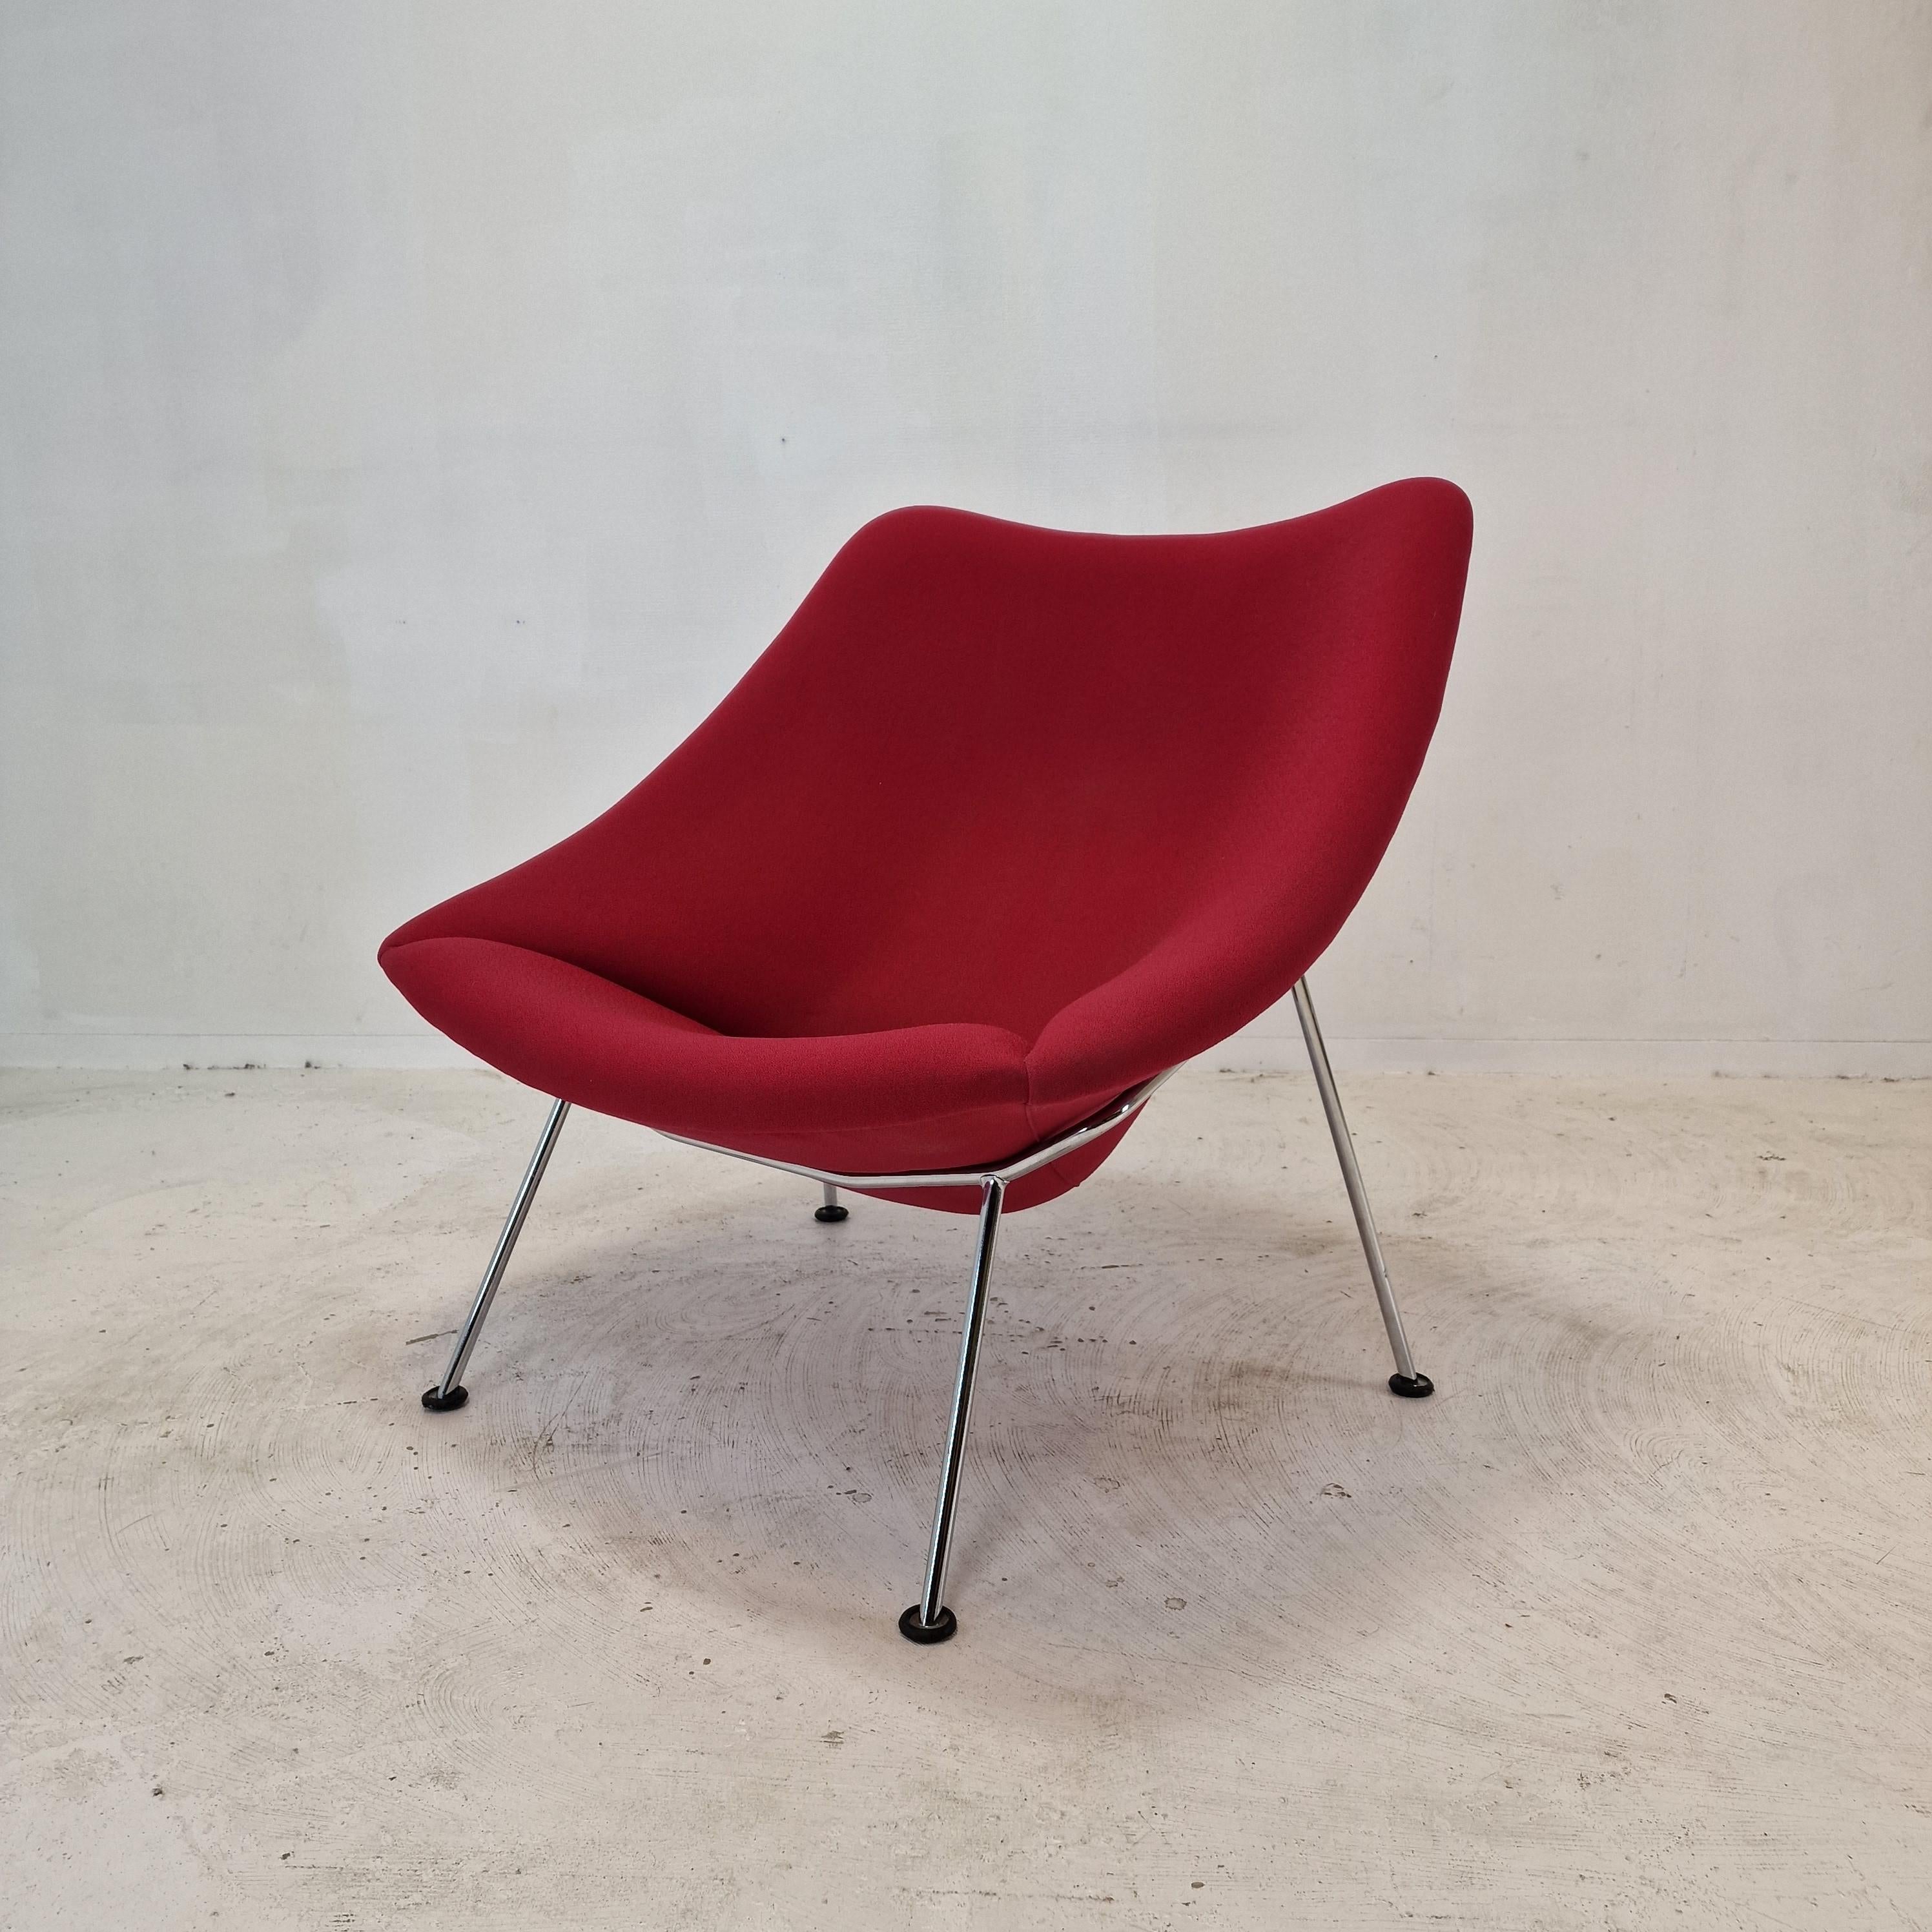 La célèbre et très confortable chaise Artifort Oyster de Pierre Paulin. 

Conçue au début des années 60, cette chaise particulière est fabriquée dans les années 80. 
Les pieds sont en métal chromé.

Cette belle chaise a le tissu en laine d'origine,